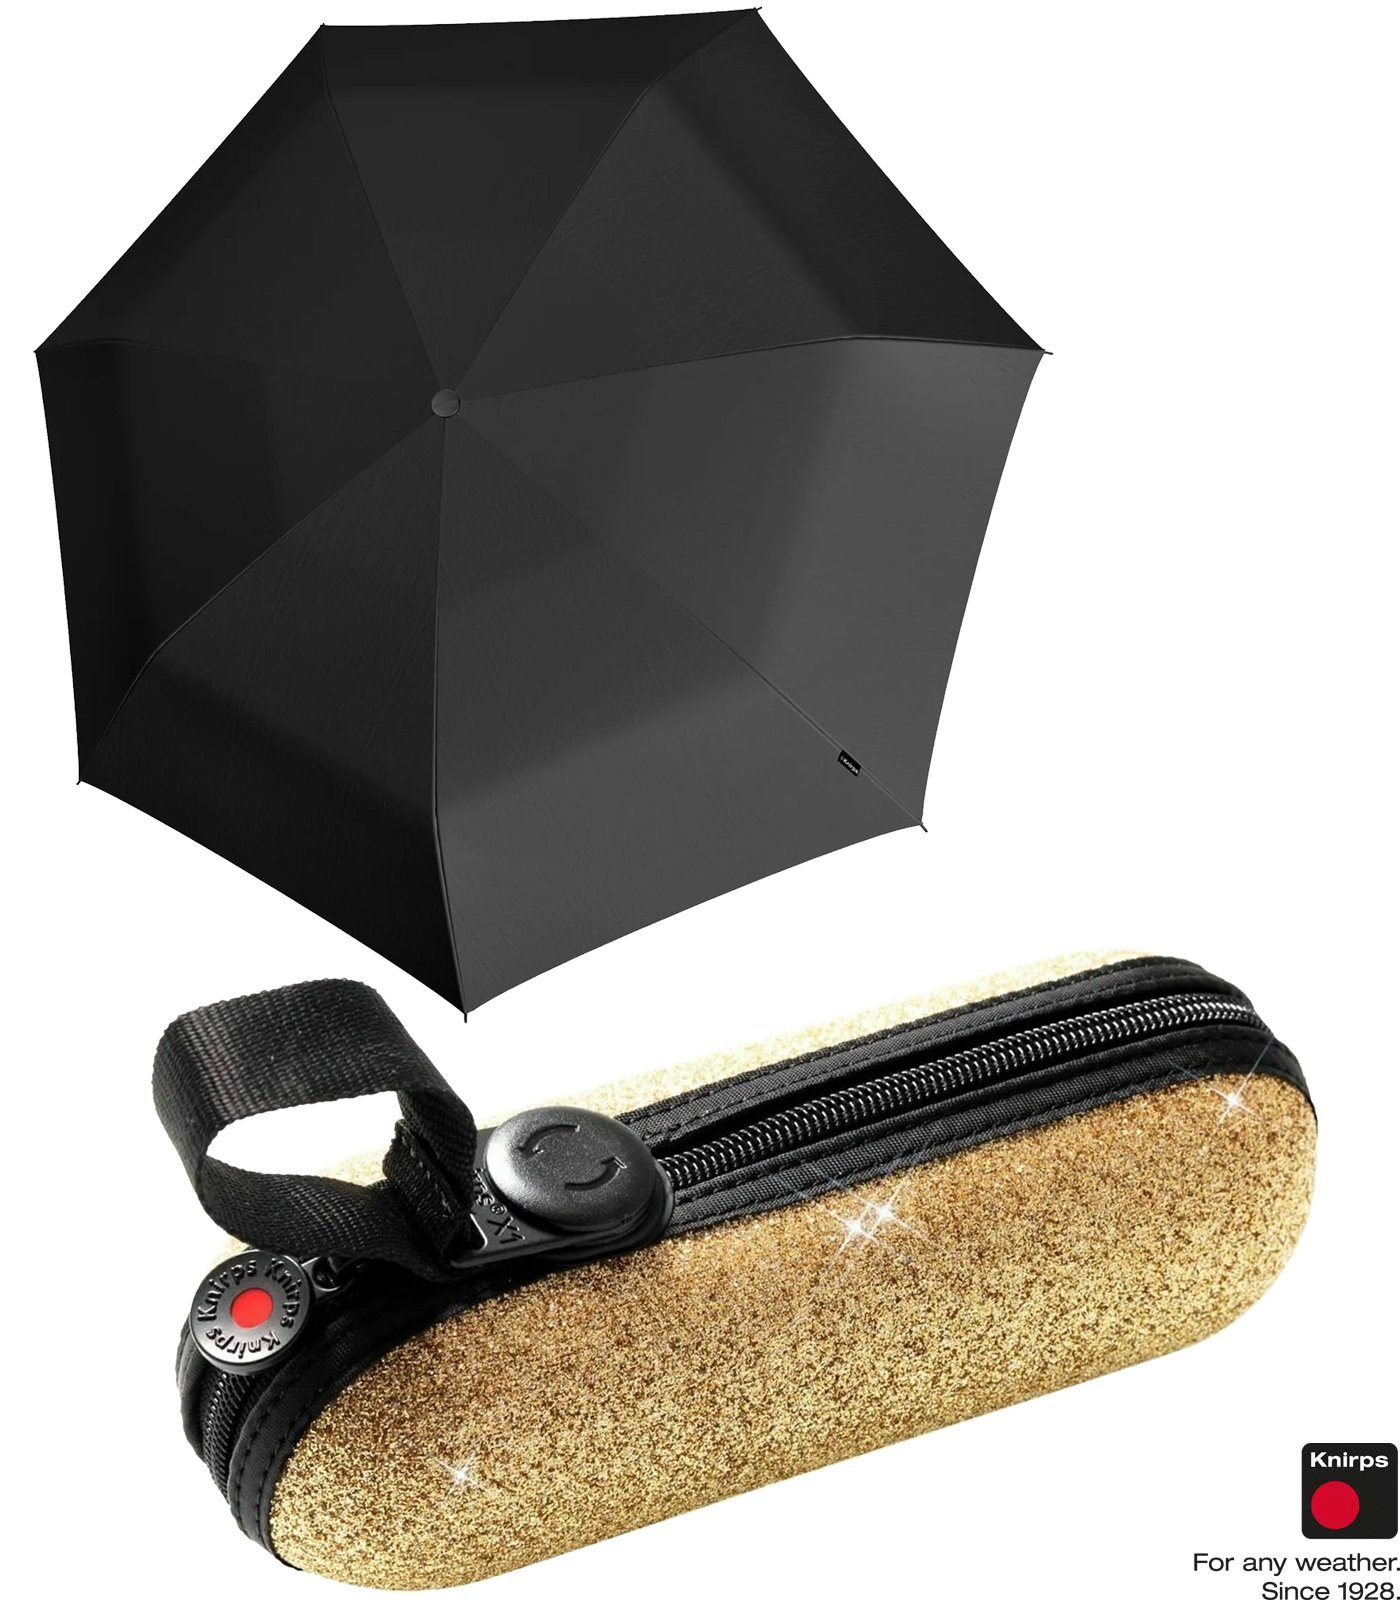 Knirps® Taschenregenschirm X1 Super Mini mit ecorepel-Technologie - 2Glam, der kleine, leichte, kompakte Begleiter